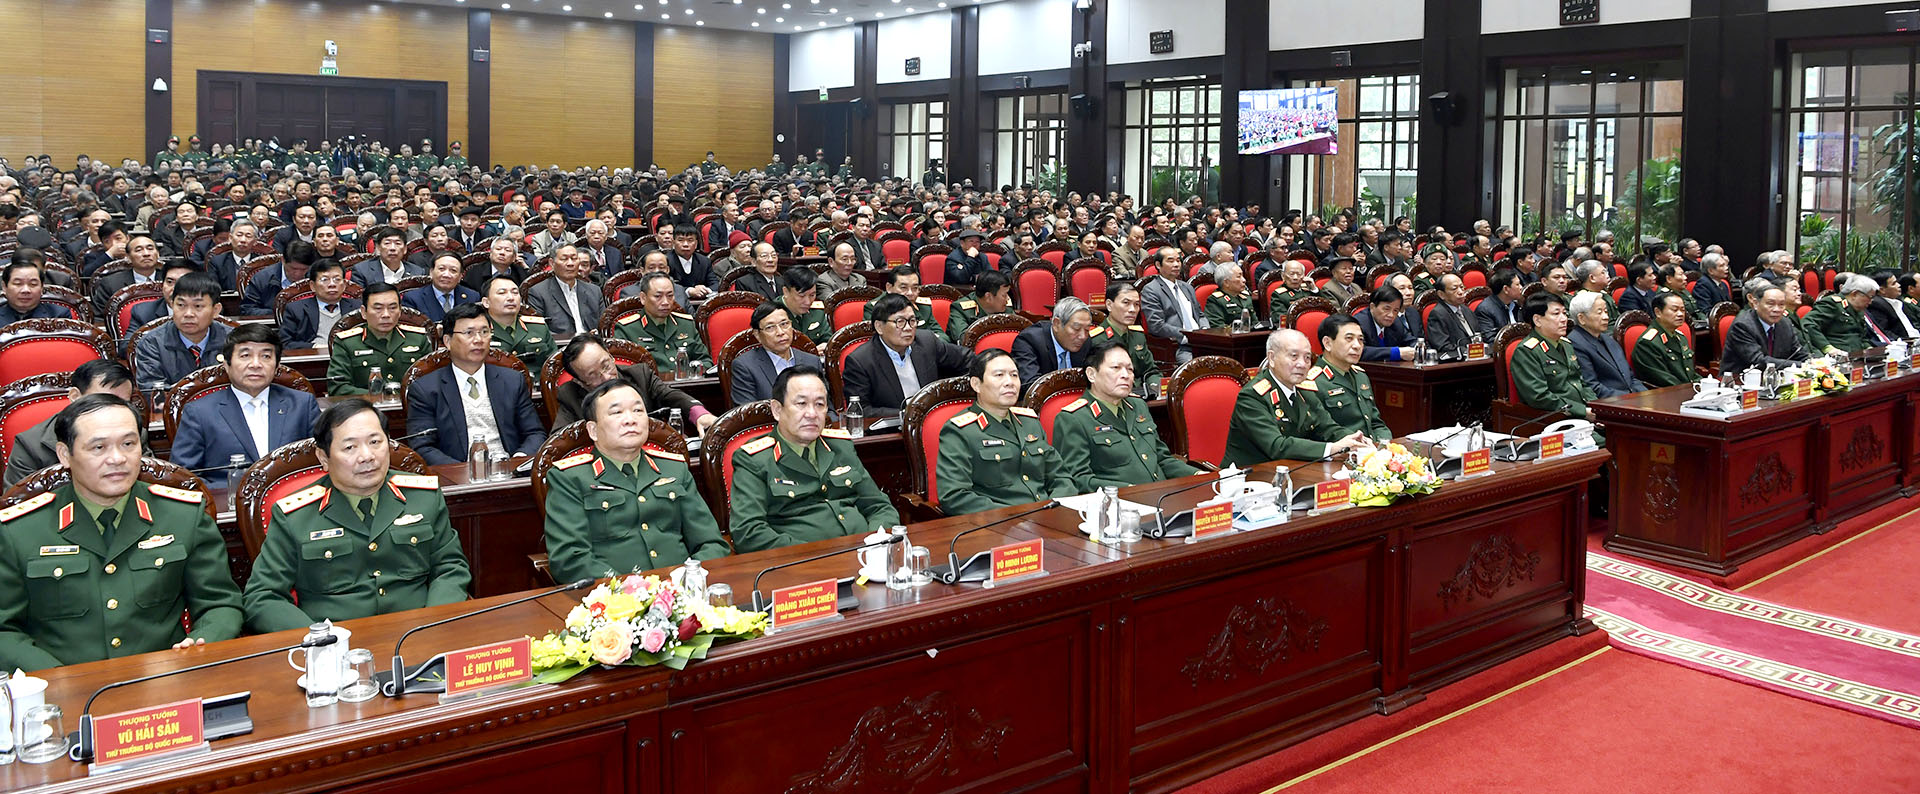 Đại tướng Phan Văn Giang: Cán bộ Quân đội cao cấp đã nghỉ hưu, nghỉ công tác luôn là lực lượng quan trọng, tin cậy của Đảng, Nhà nước